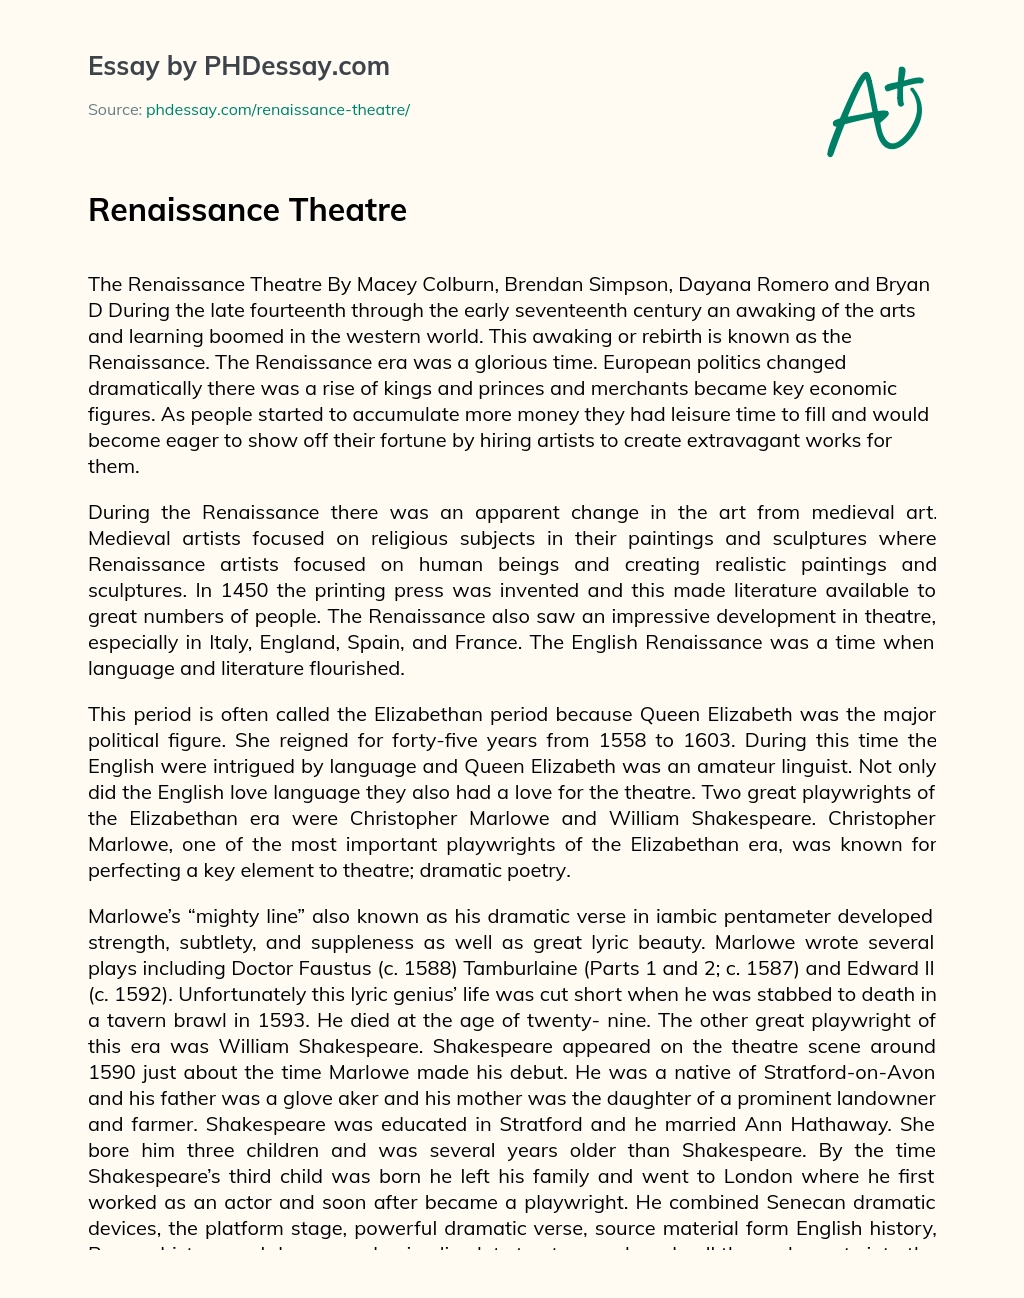 Renaissance Theatre essay